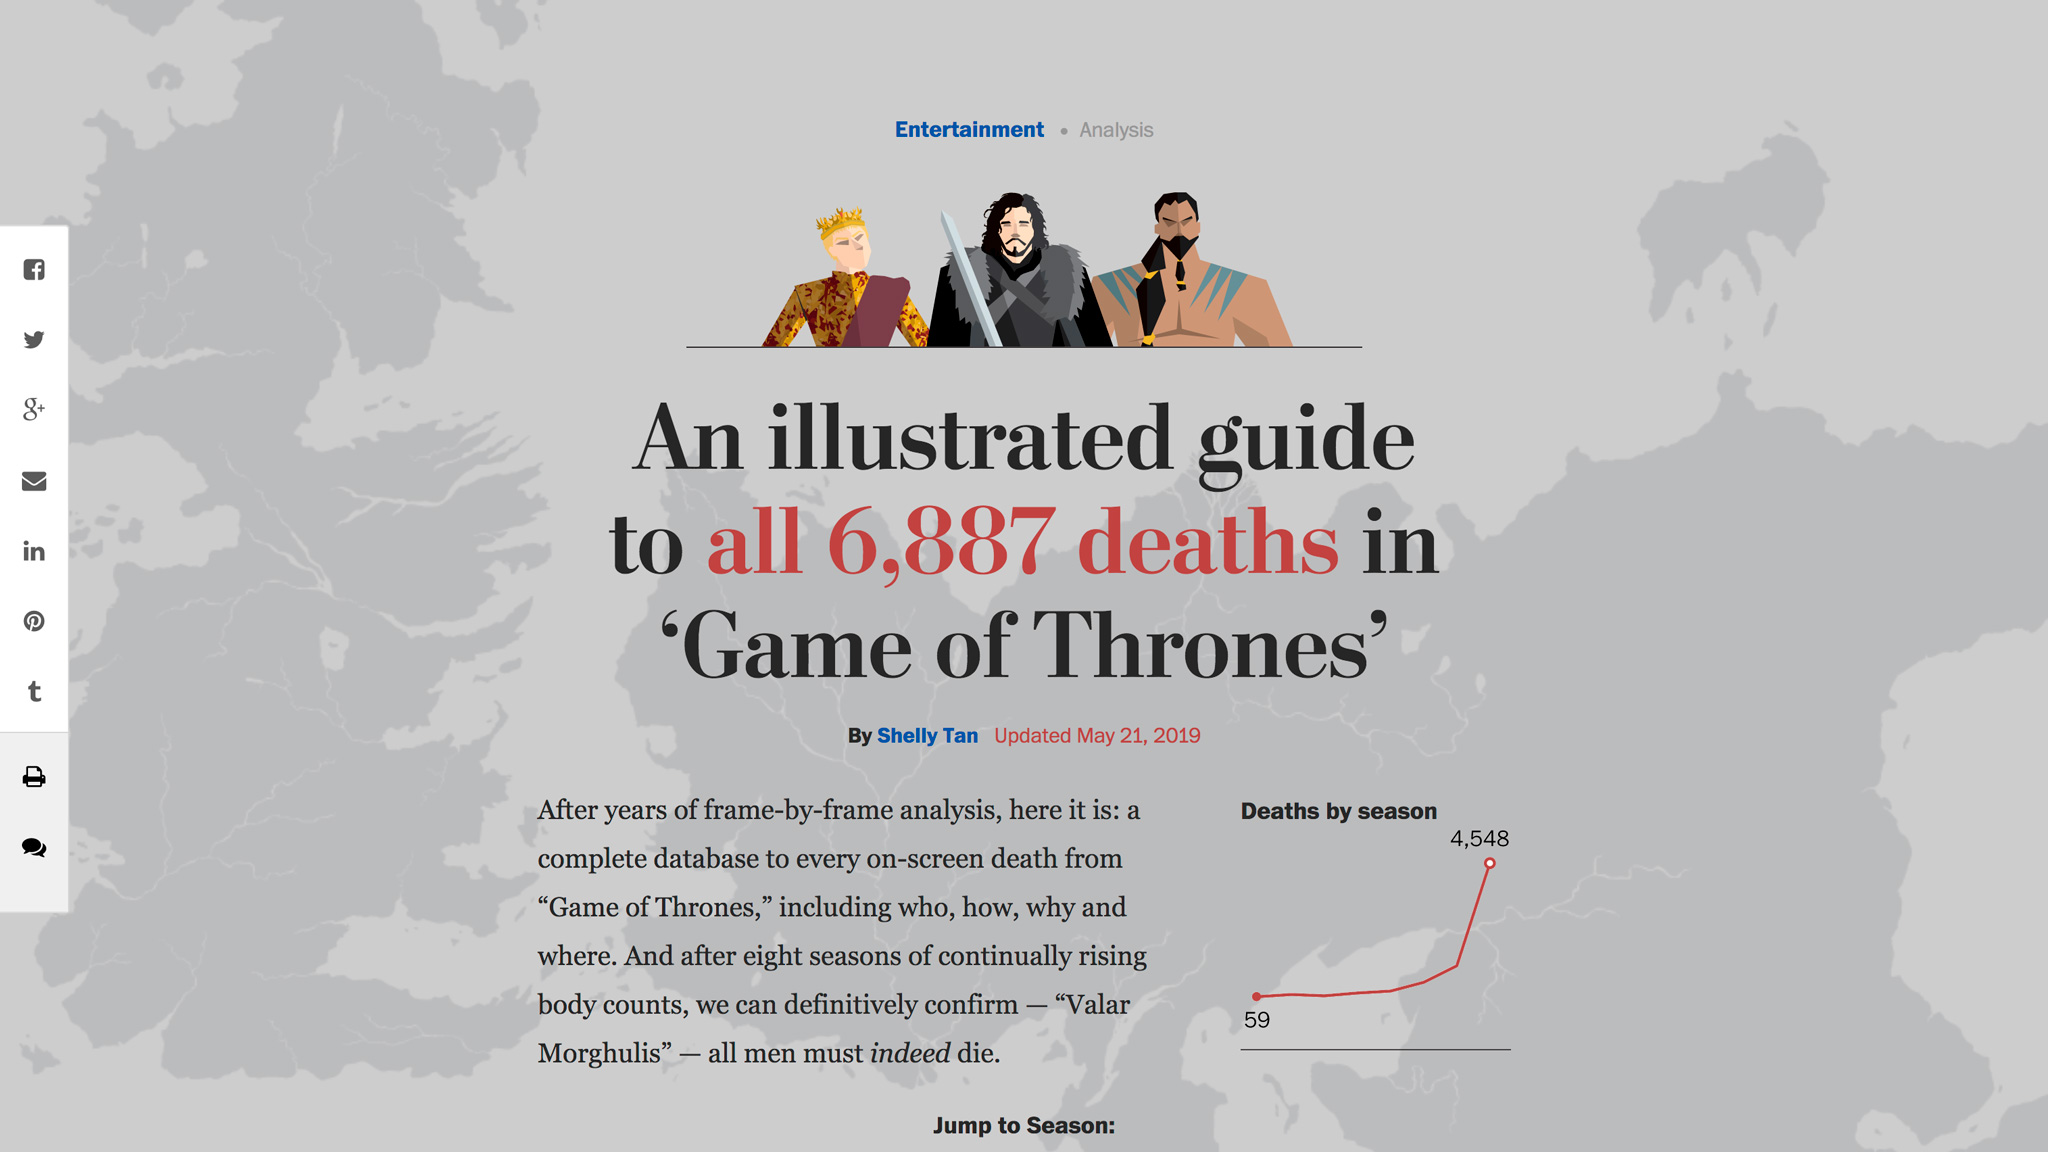 Иллюстрированный гид, где описываются все 6887 смертей в «Игре престолов», информирует, кто, как, почему и где встретил свой кровавый конец, а герои изображены с помощью специальной графики